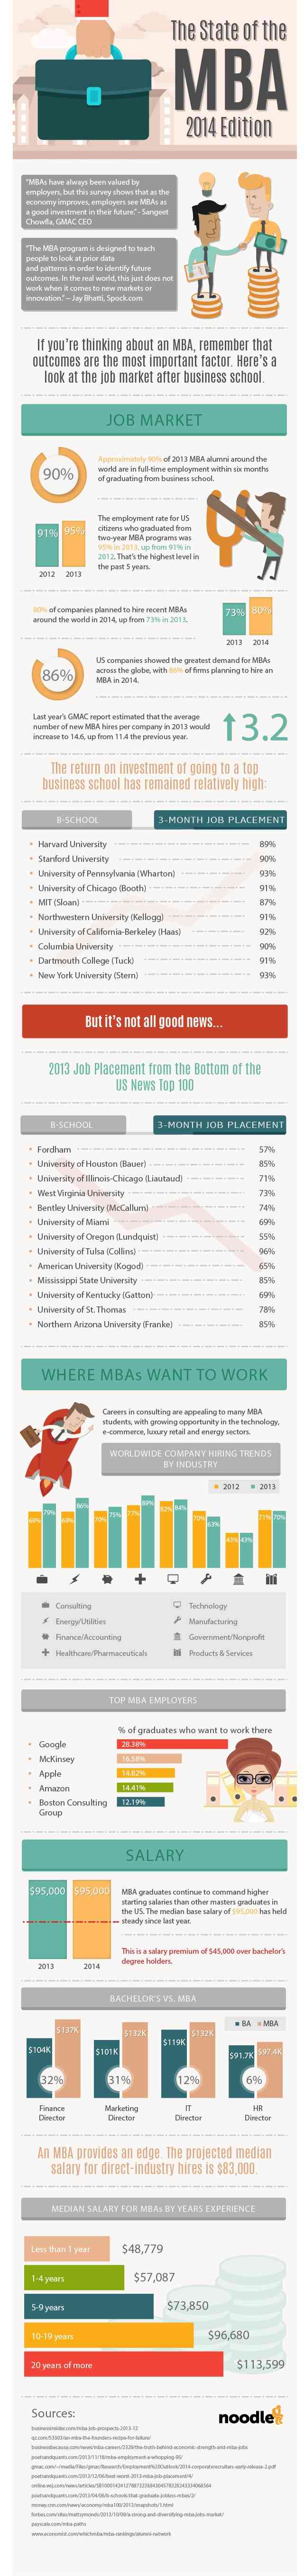 Mba-infographic